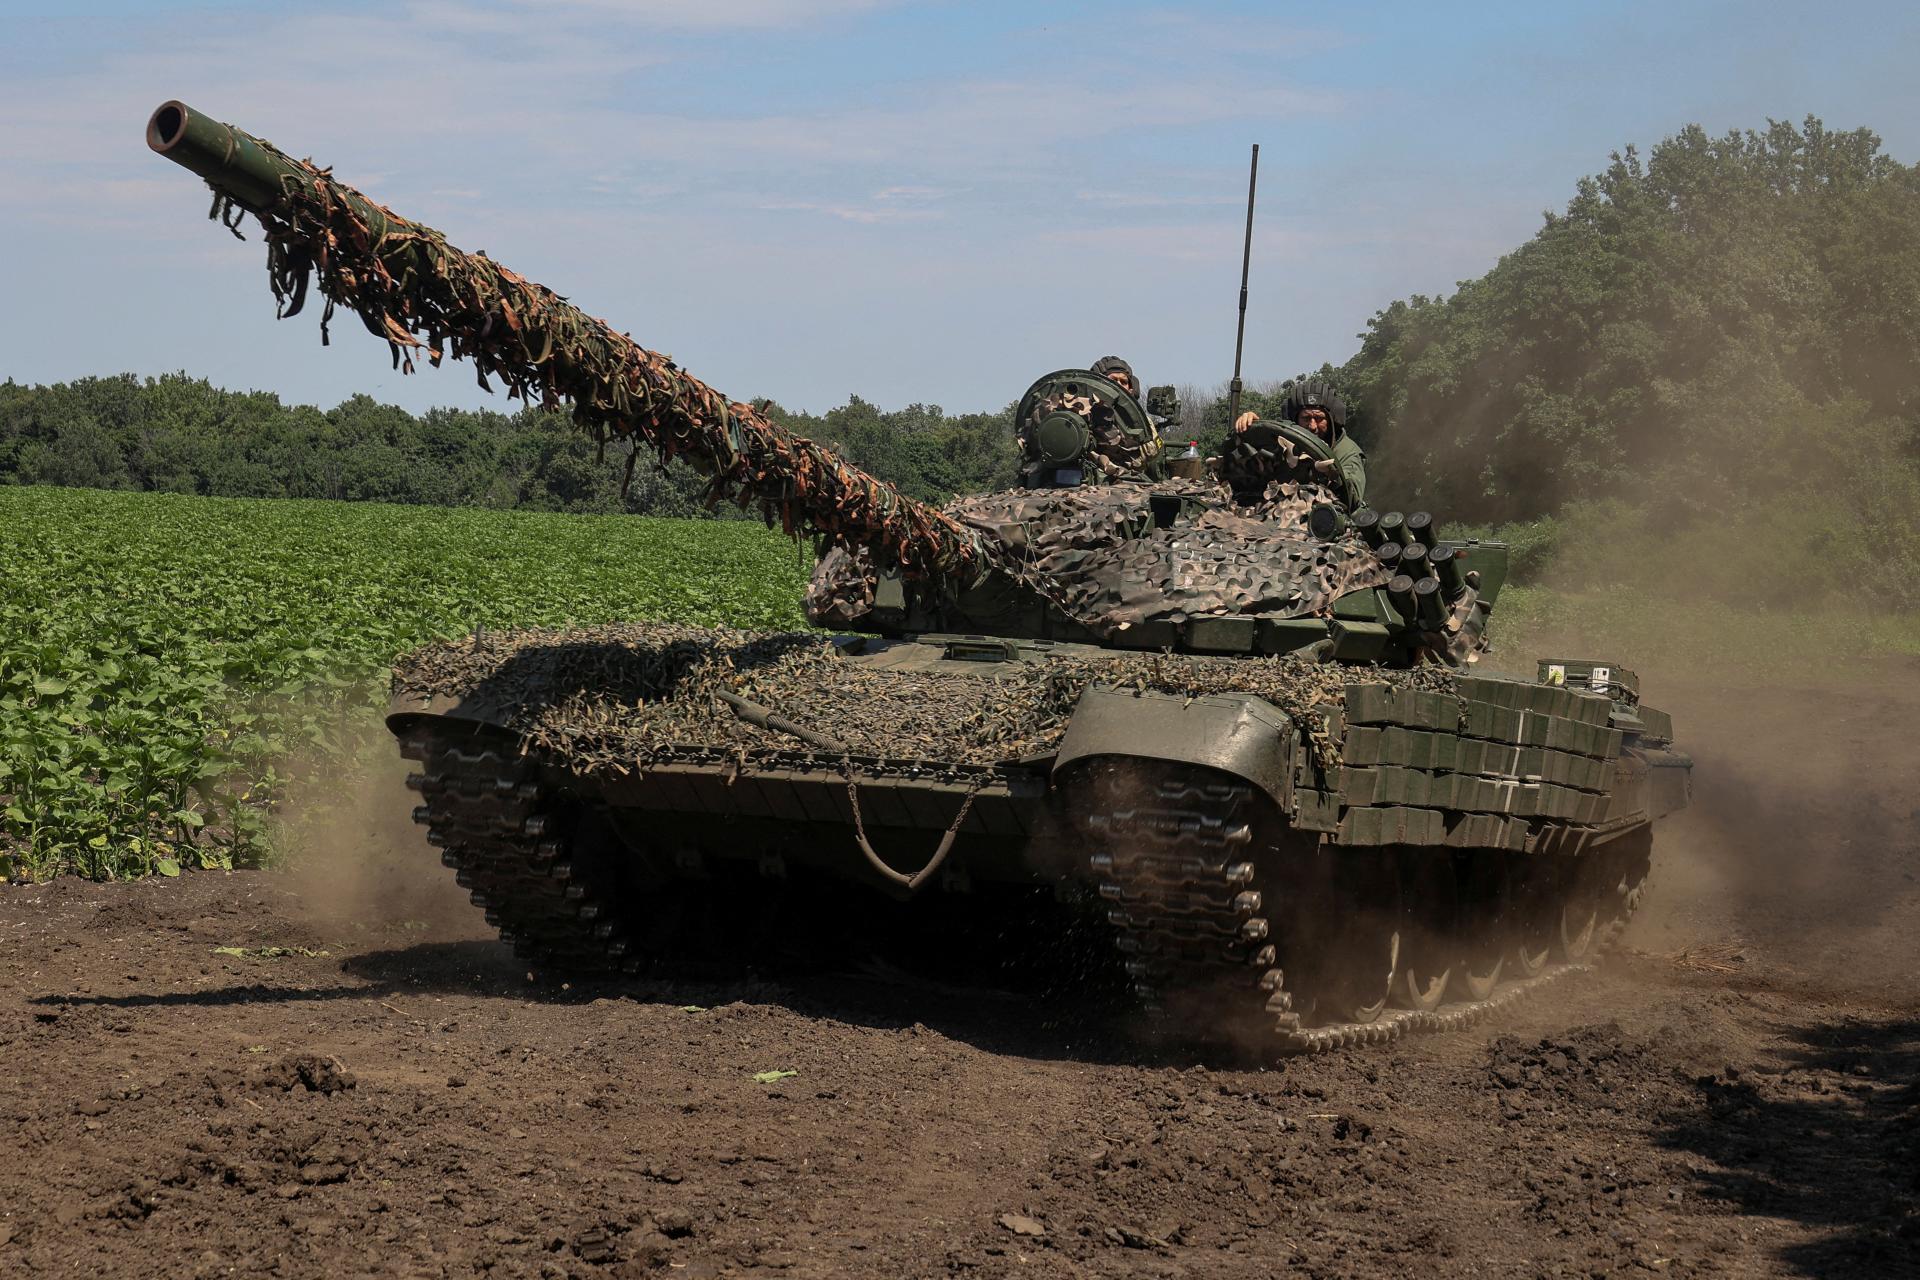 Vojna na Ukrajine: Putin nemôže vyhrať – ale USA môžu prehrať